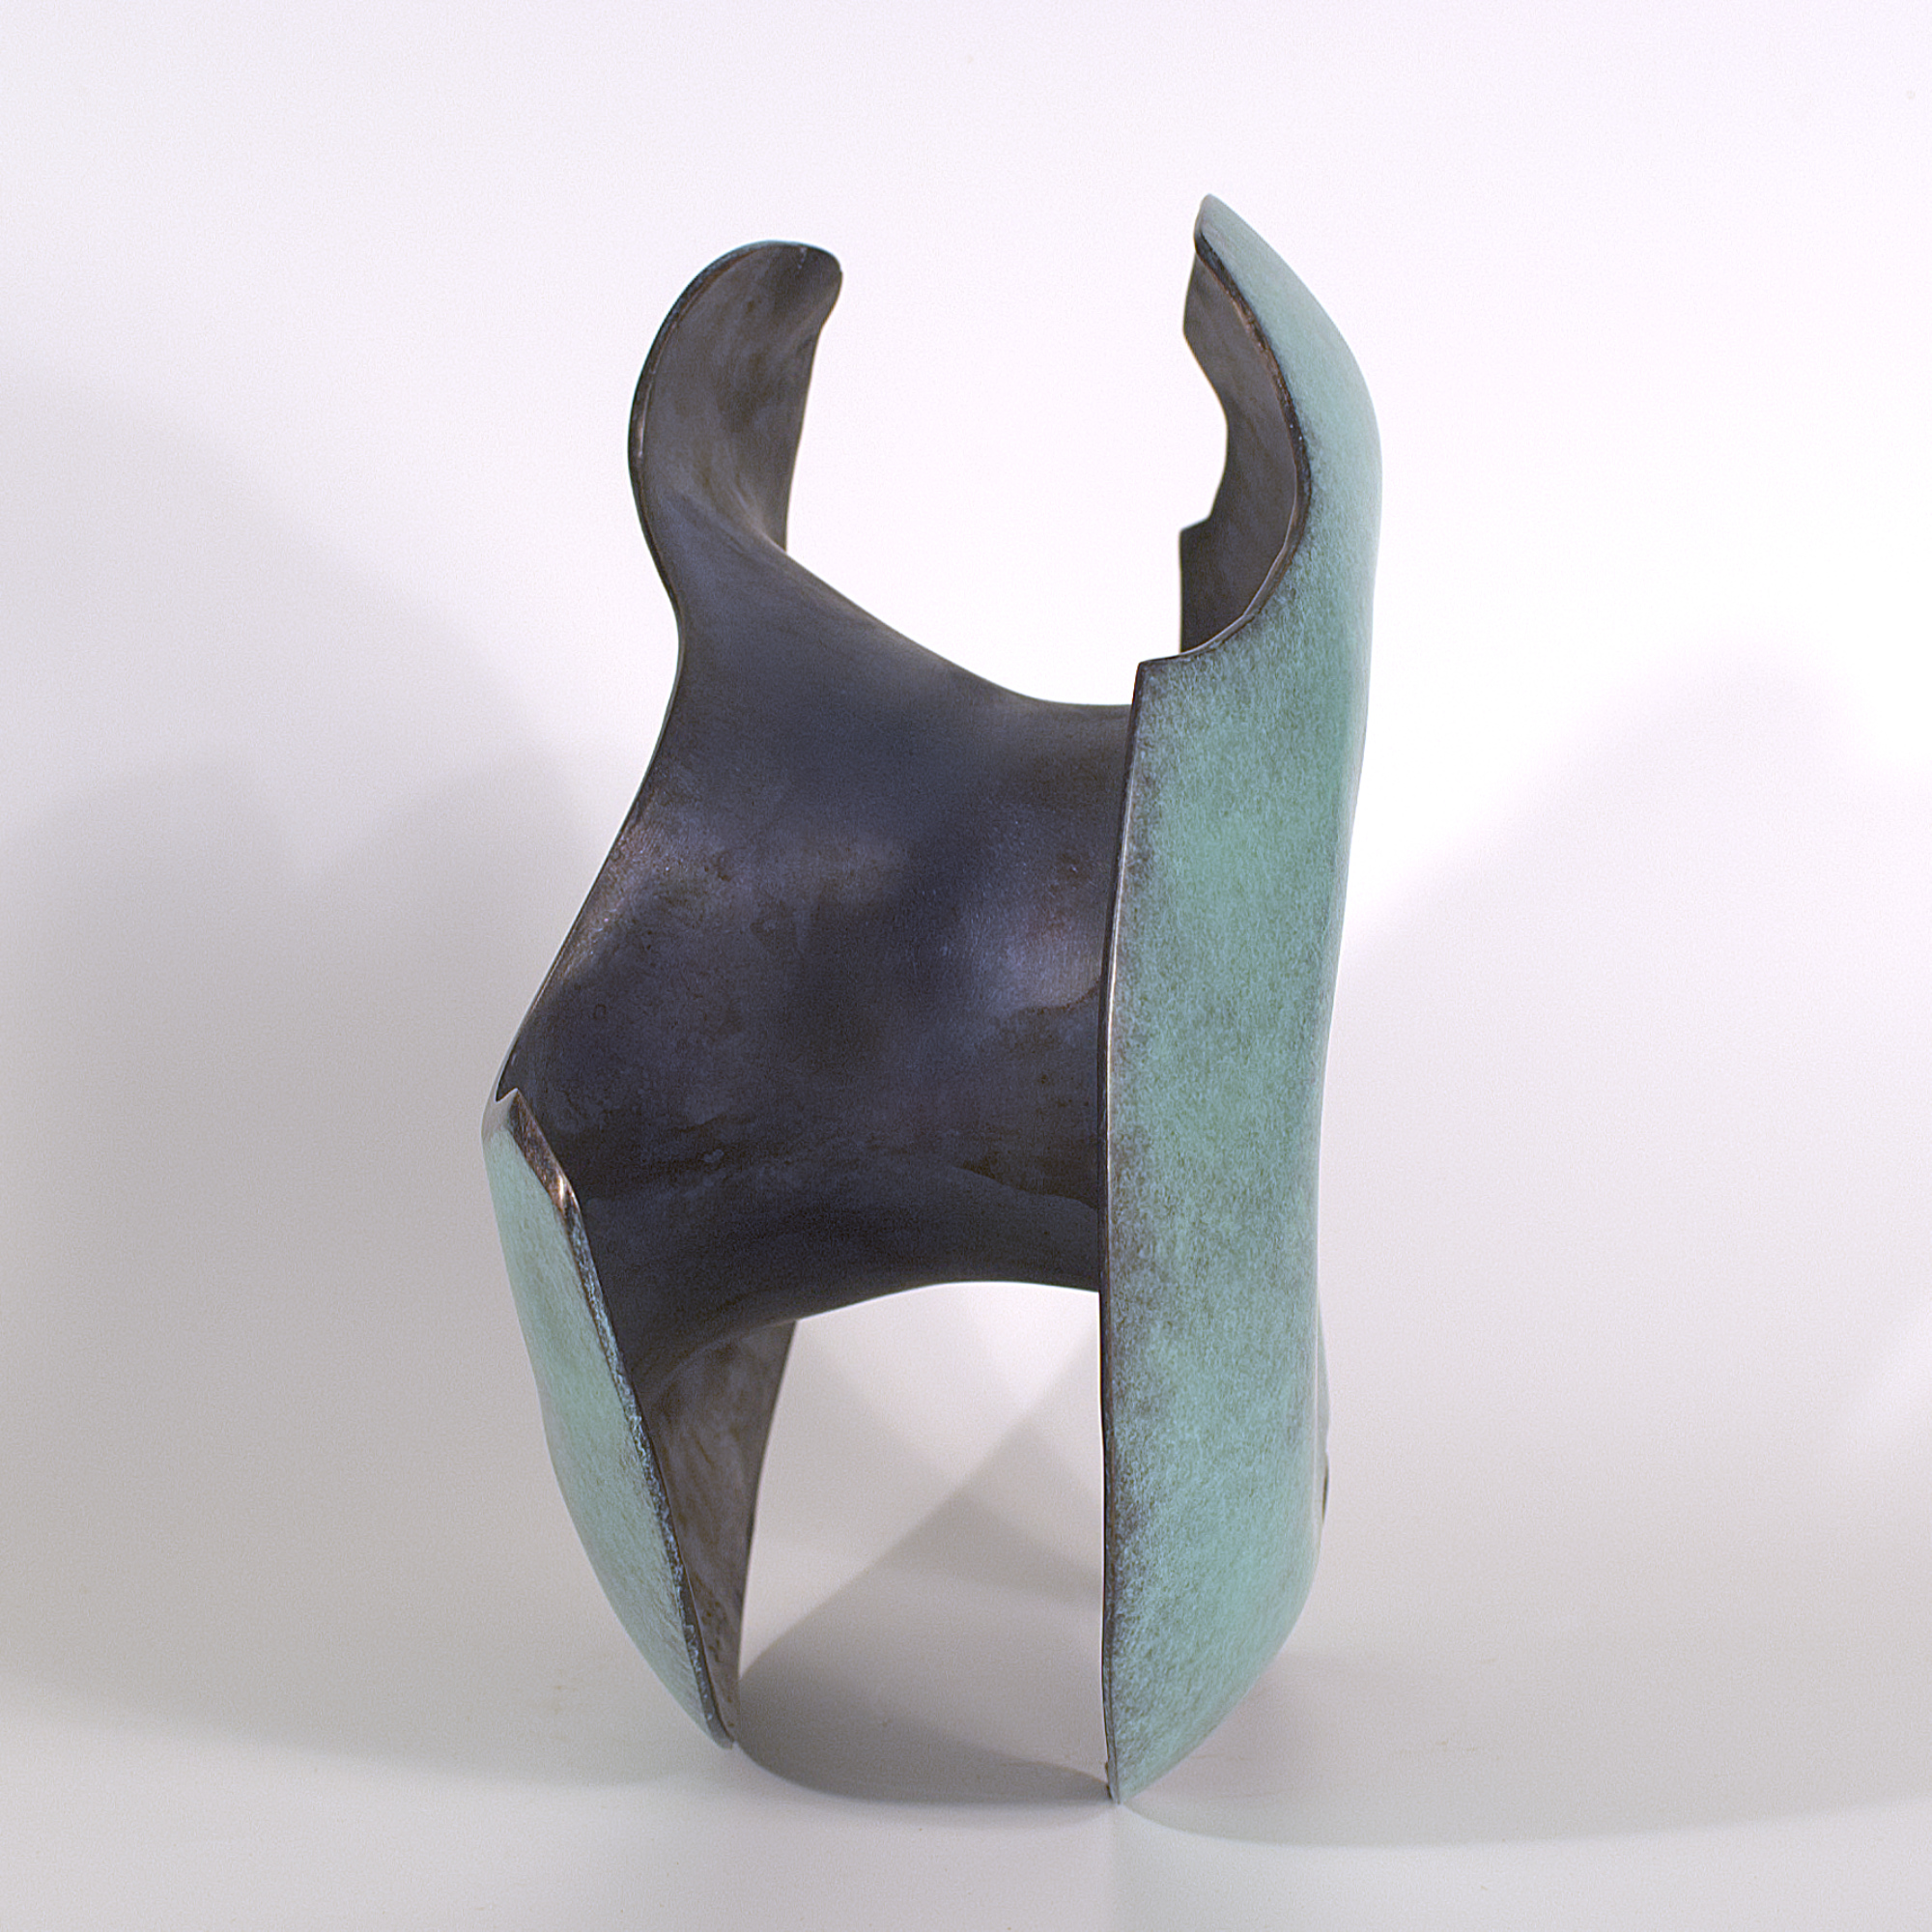 Annular form #1. Modern bronze sculpture by Steve Howlett. 2013